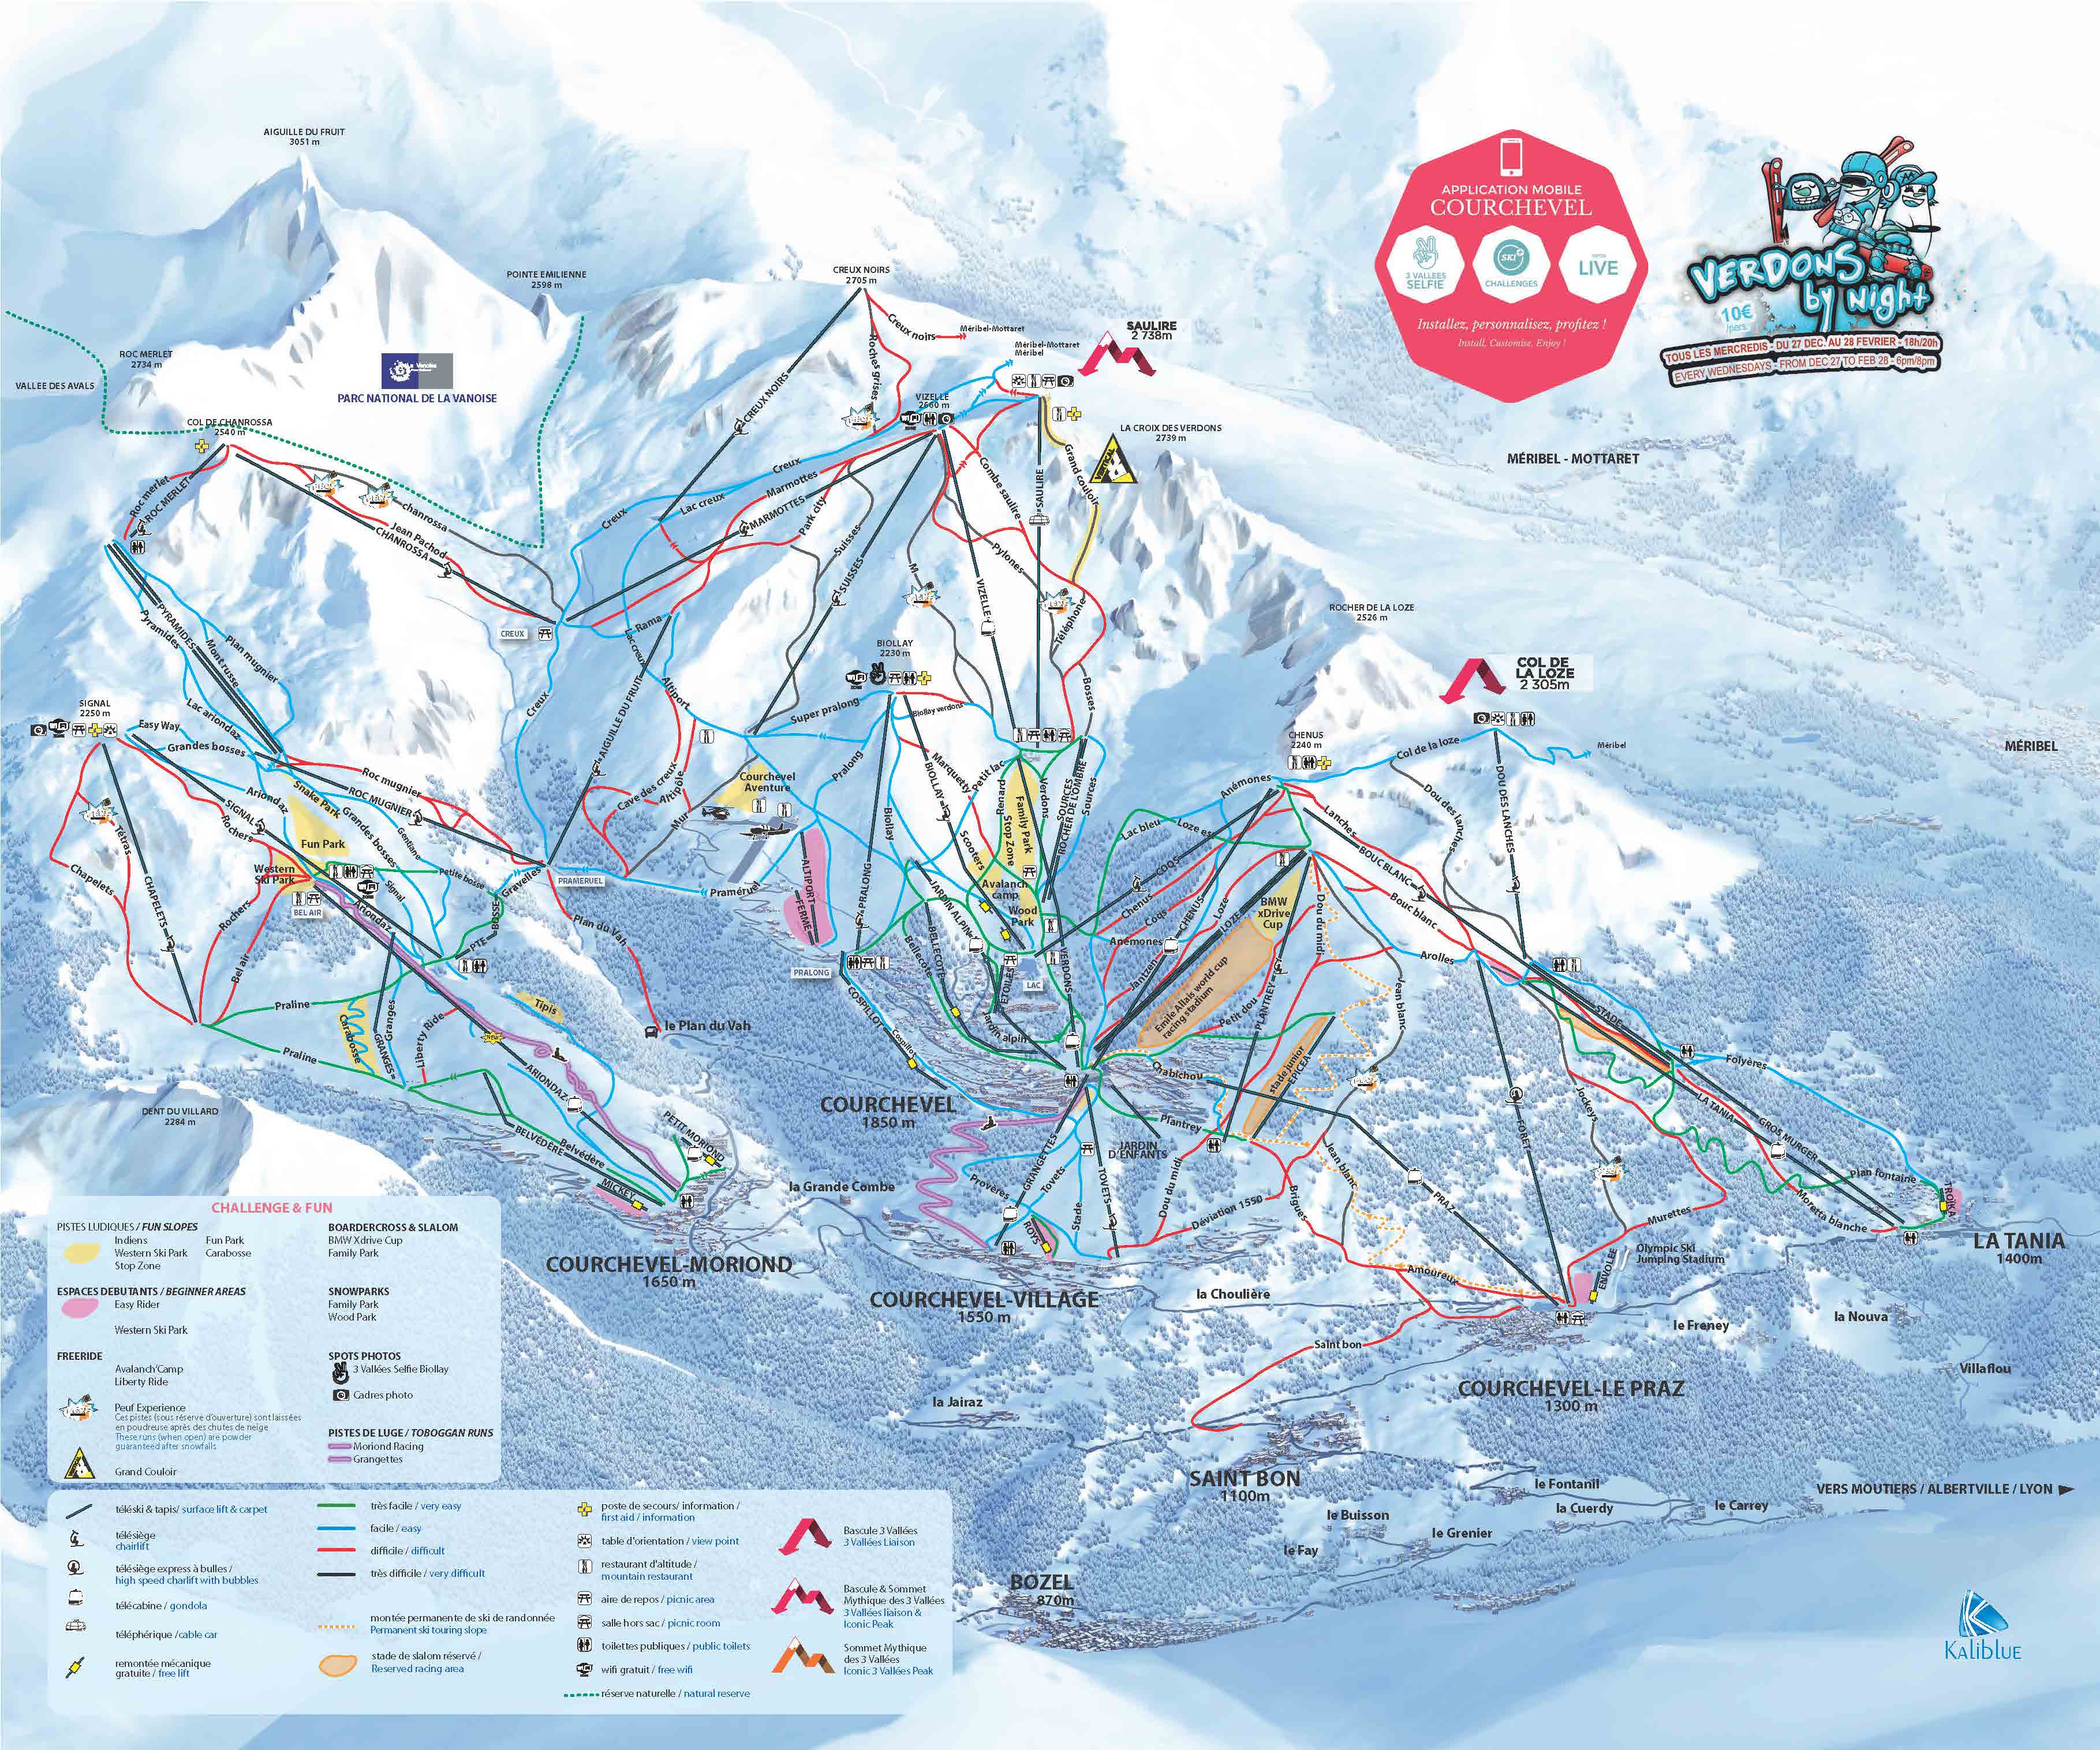 Skiing in Courchevel La Tania, A Complete Ski Guide